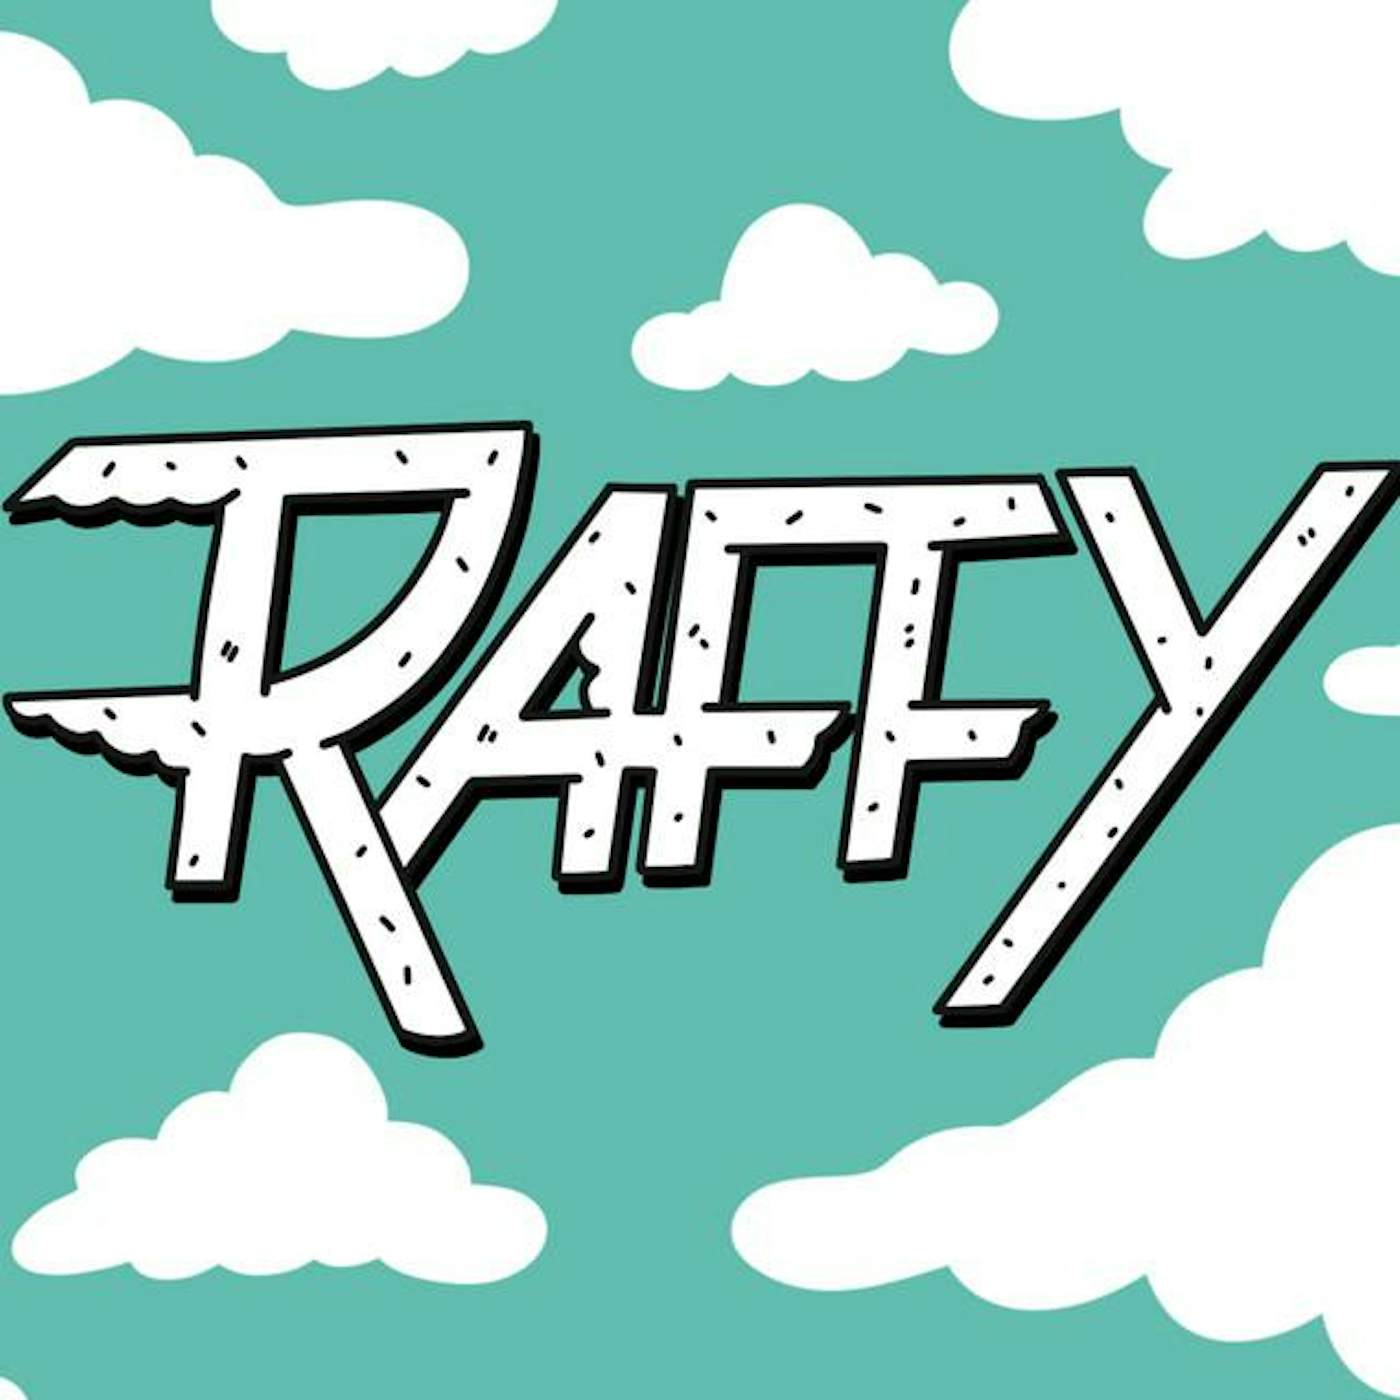 Raffy